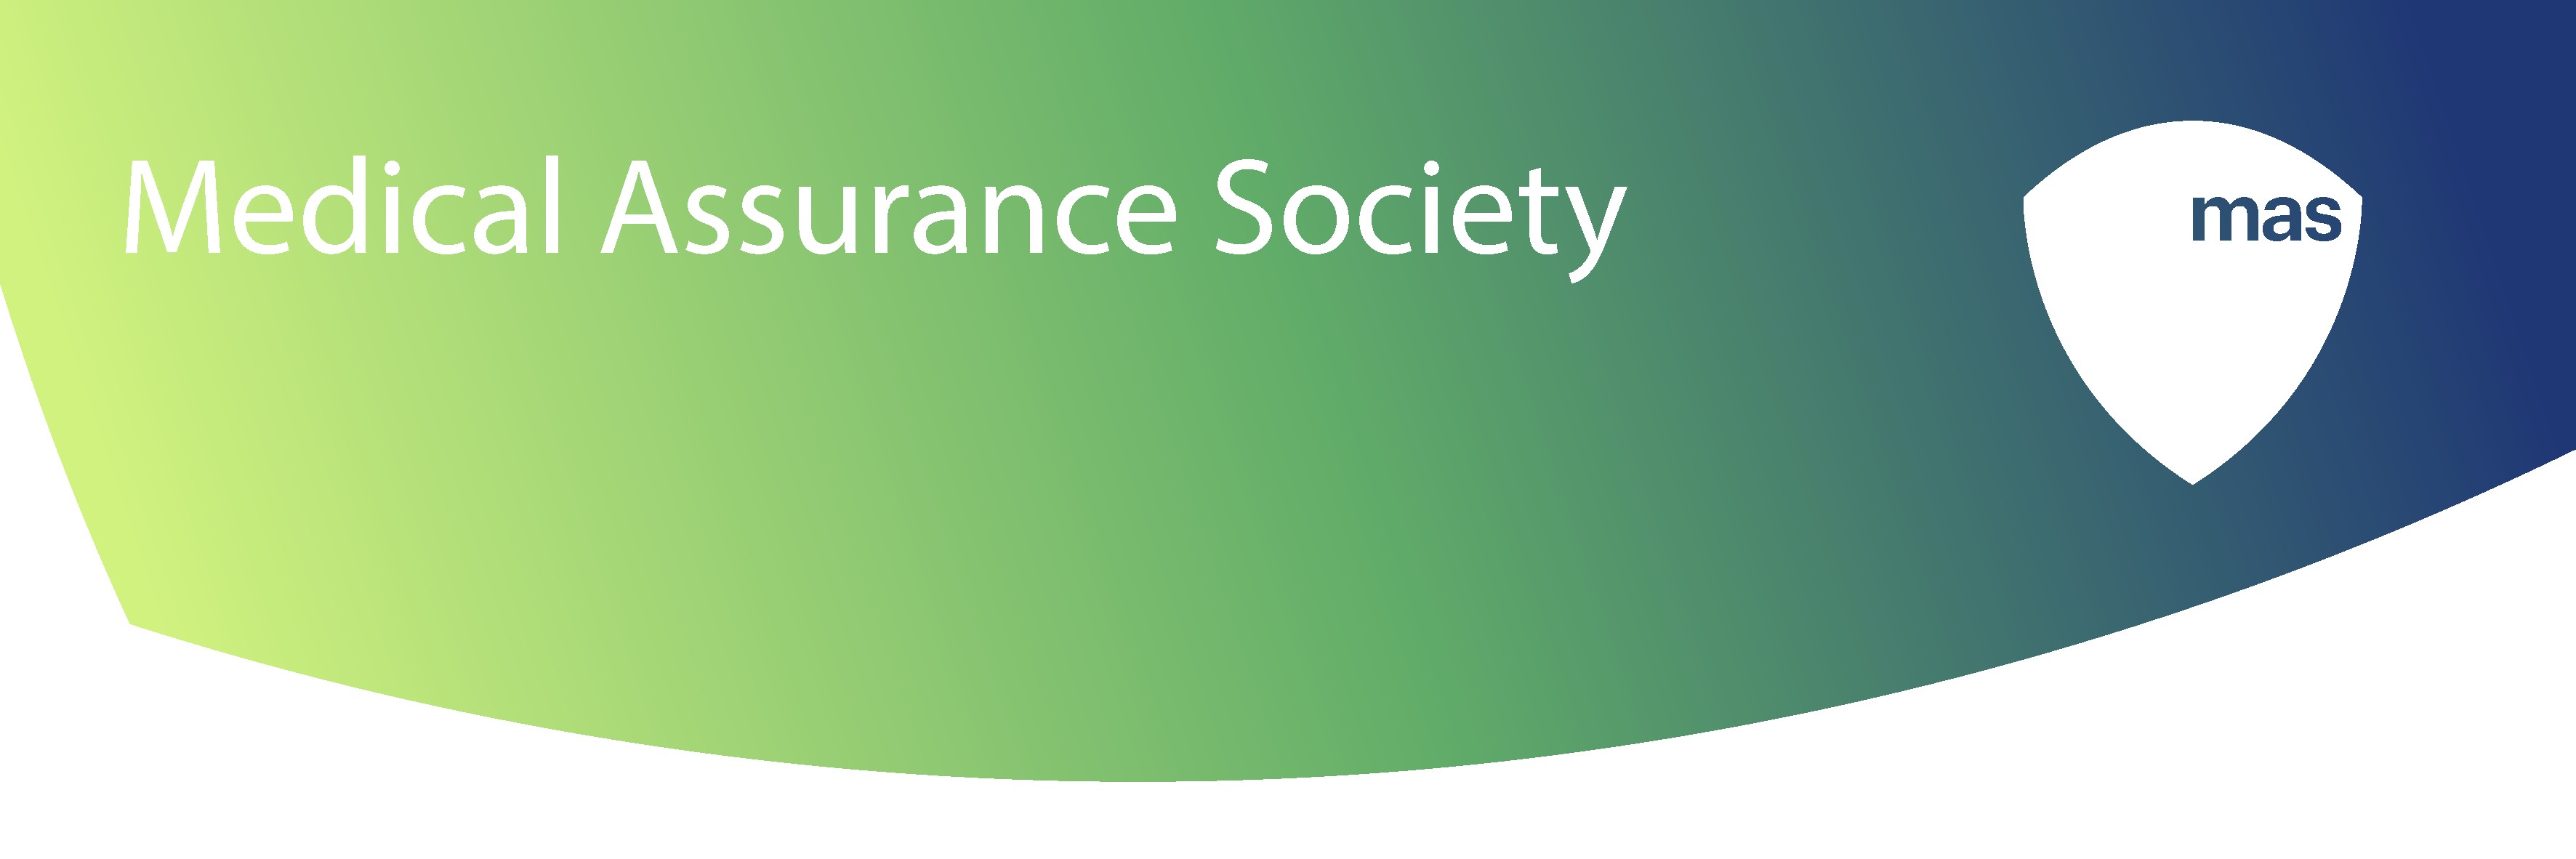 MAS - Medical Assurance Society